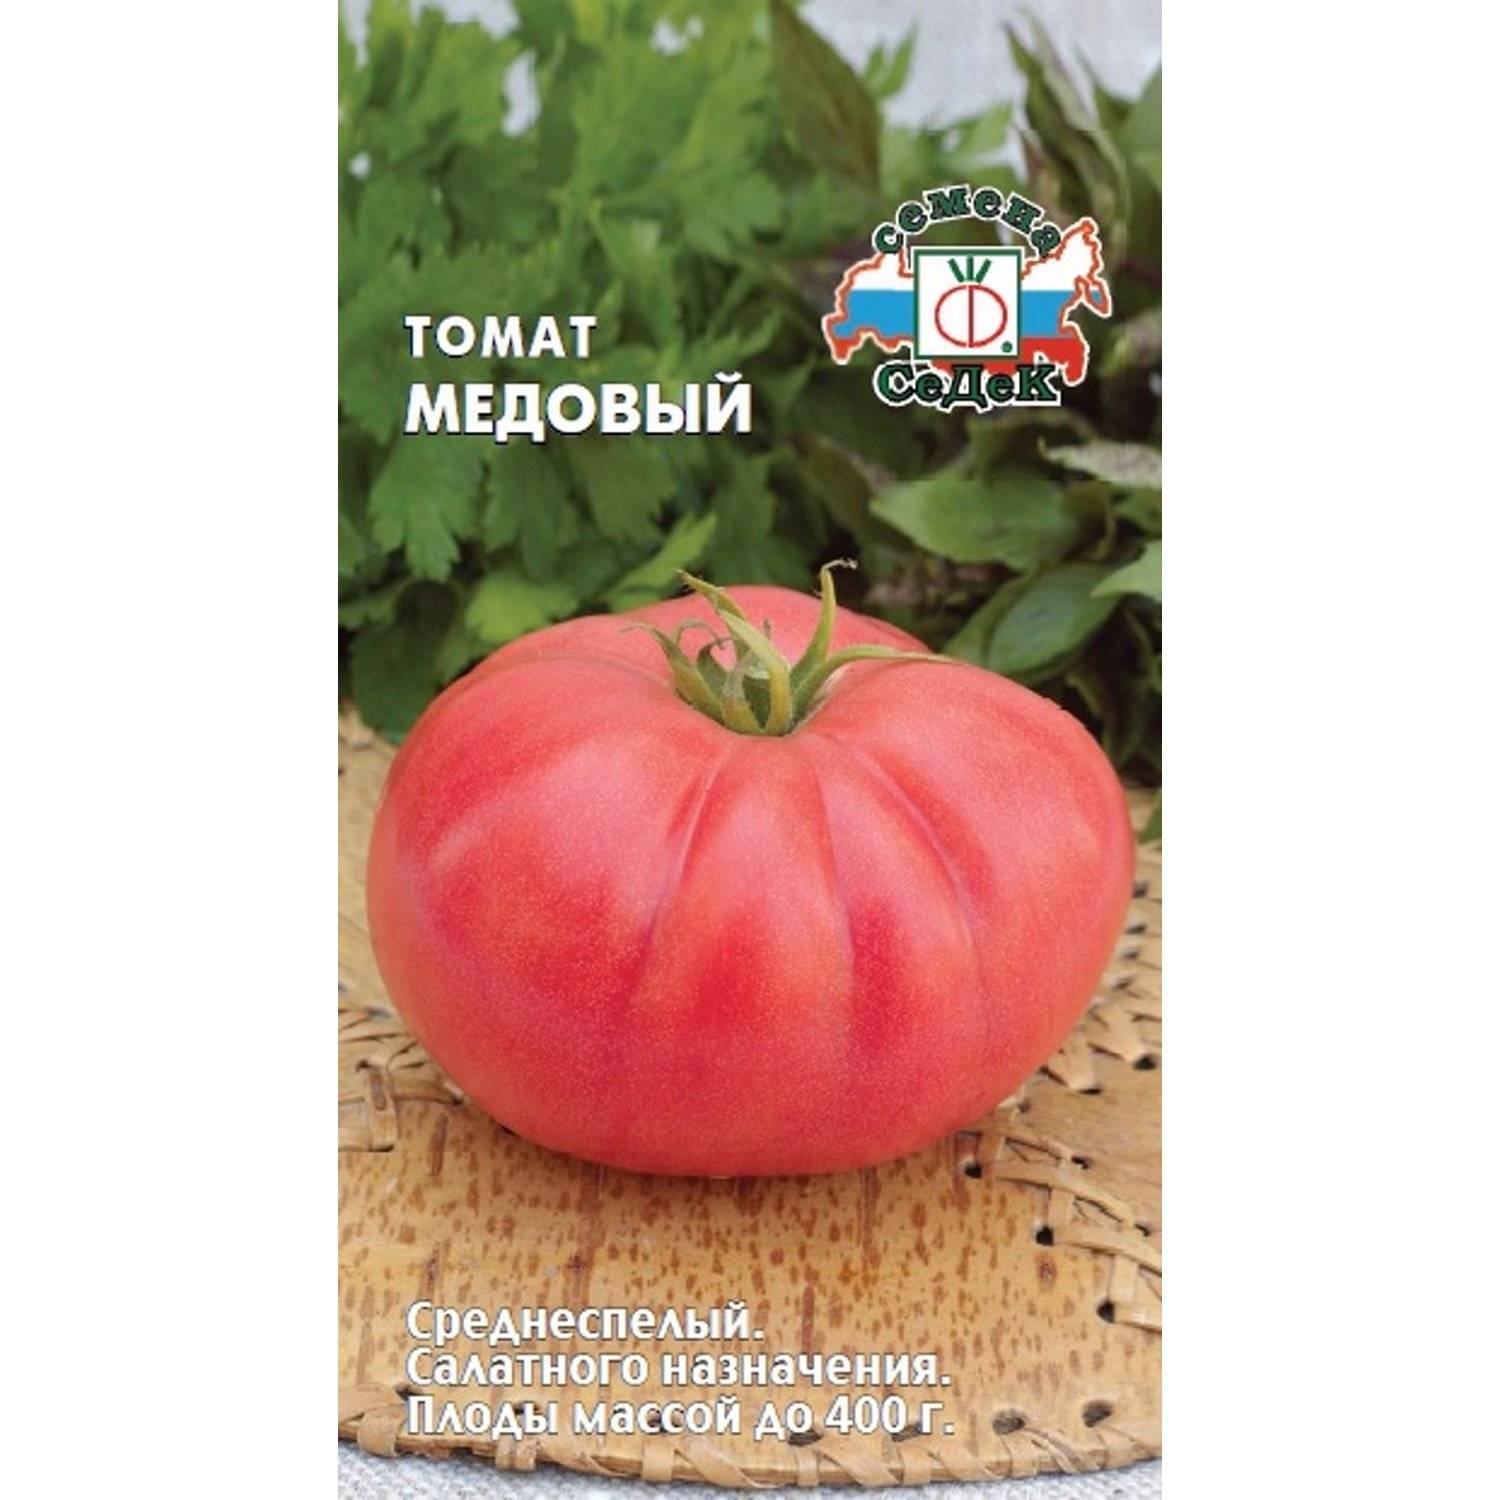 ✅ томат медовый салют описание сорта фото отзывы - питомник46.рф